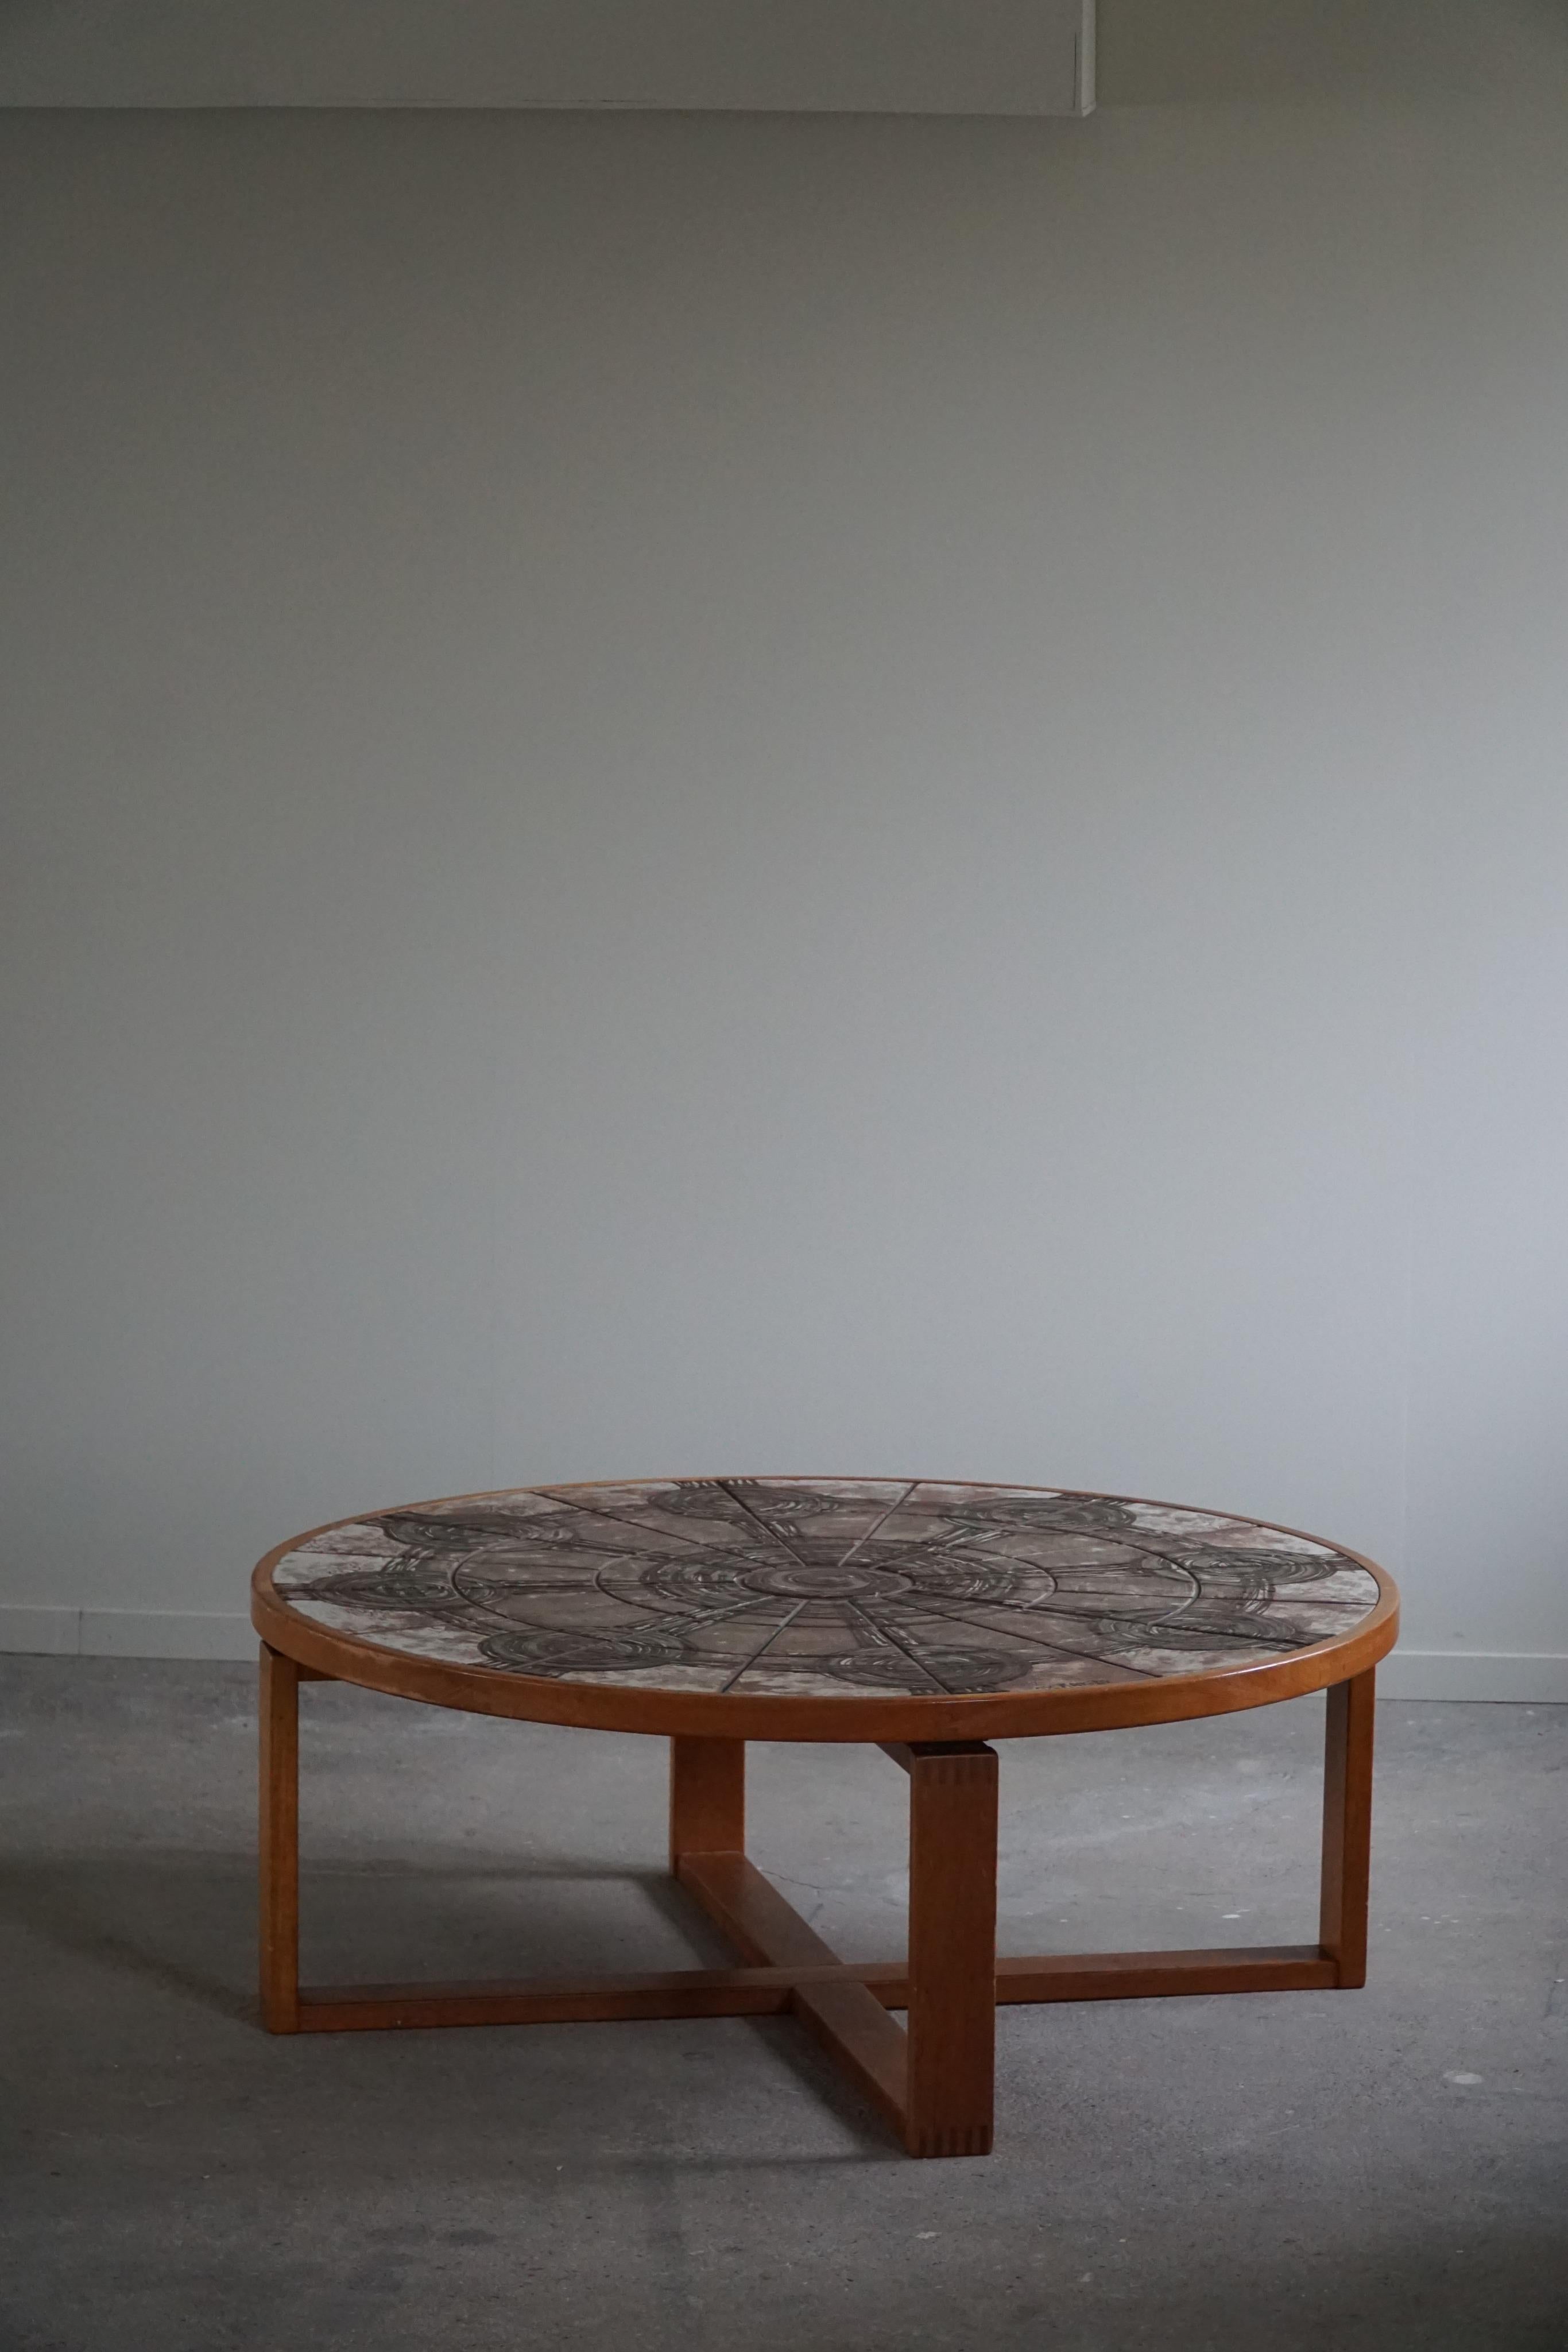 Ein hochwertiger großer runder Couchtisch / Sofatisch aus massivem Teakholz mit handgefertigten Keramikfliesen. Entworfen von Ox Art für Trioh in den 1970er Jahren, Dänemark. Hier unterschrieben von.

Dieser schöne Tisch passt zu vielen